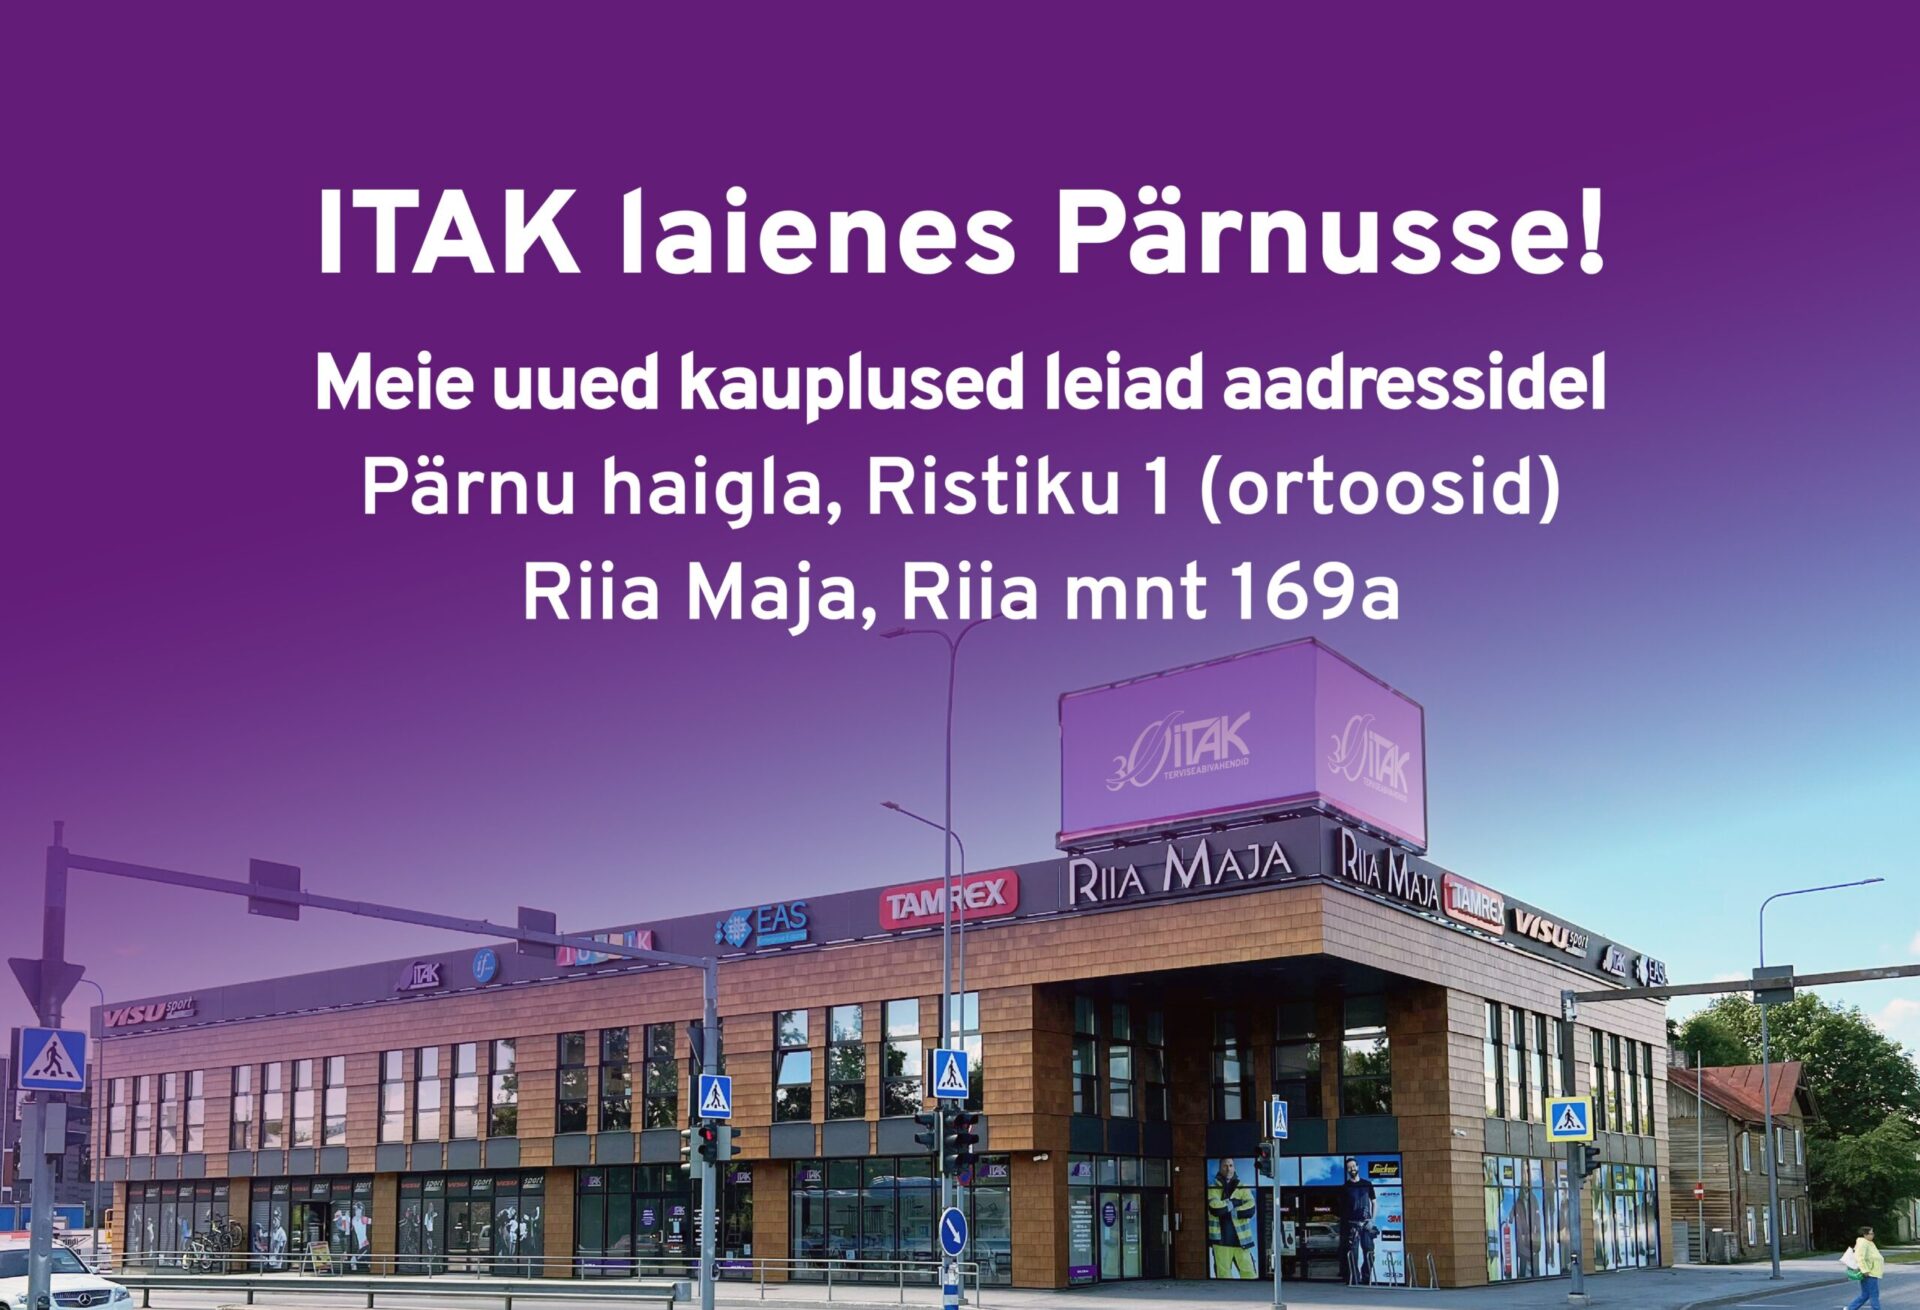 Meil on suur rõõm teatada, et ITAK Terviseabivahendid on nüüd ka Pärnus esindatud! Avasime Pärnus koguni kaks uut kauplust, et pakkudaLeer Más The post ITAK lai